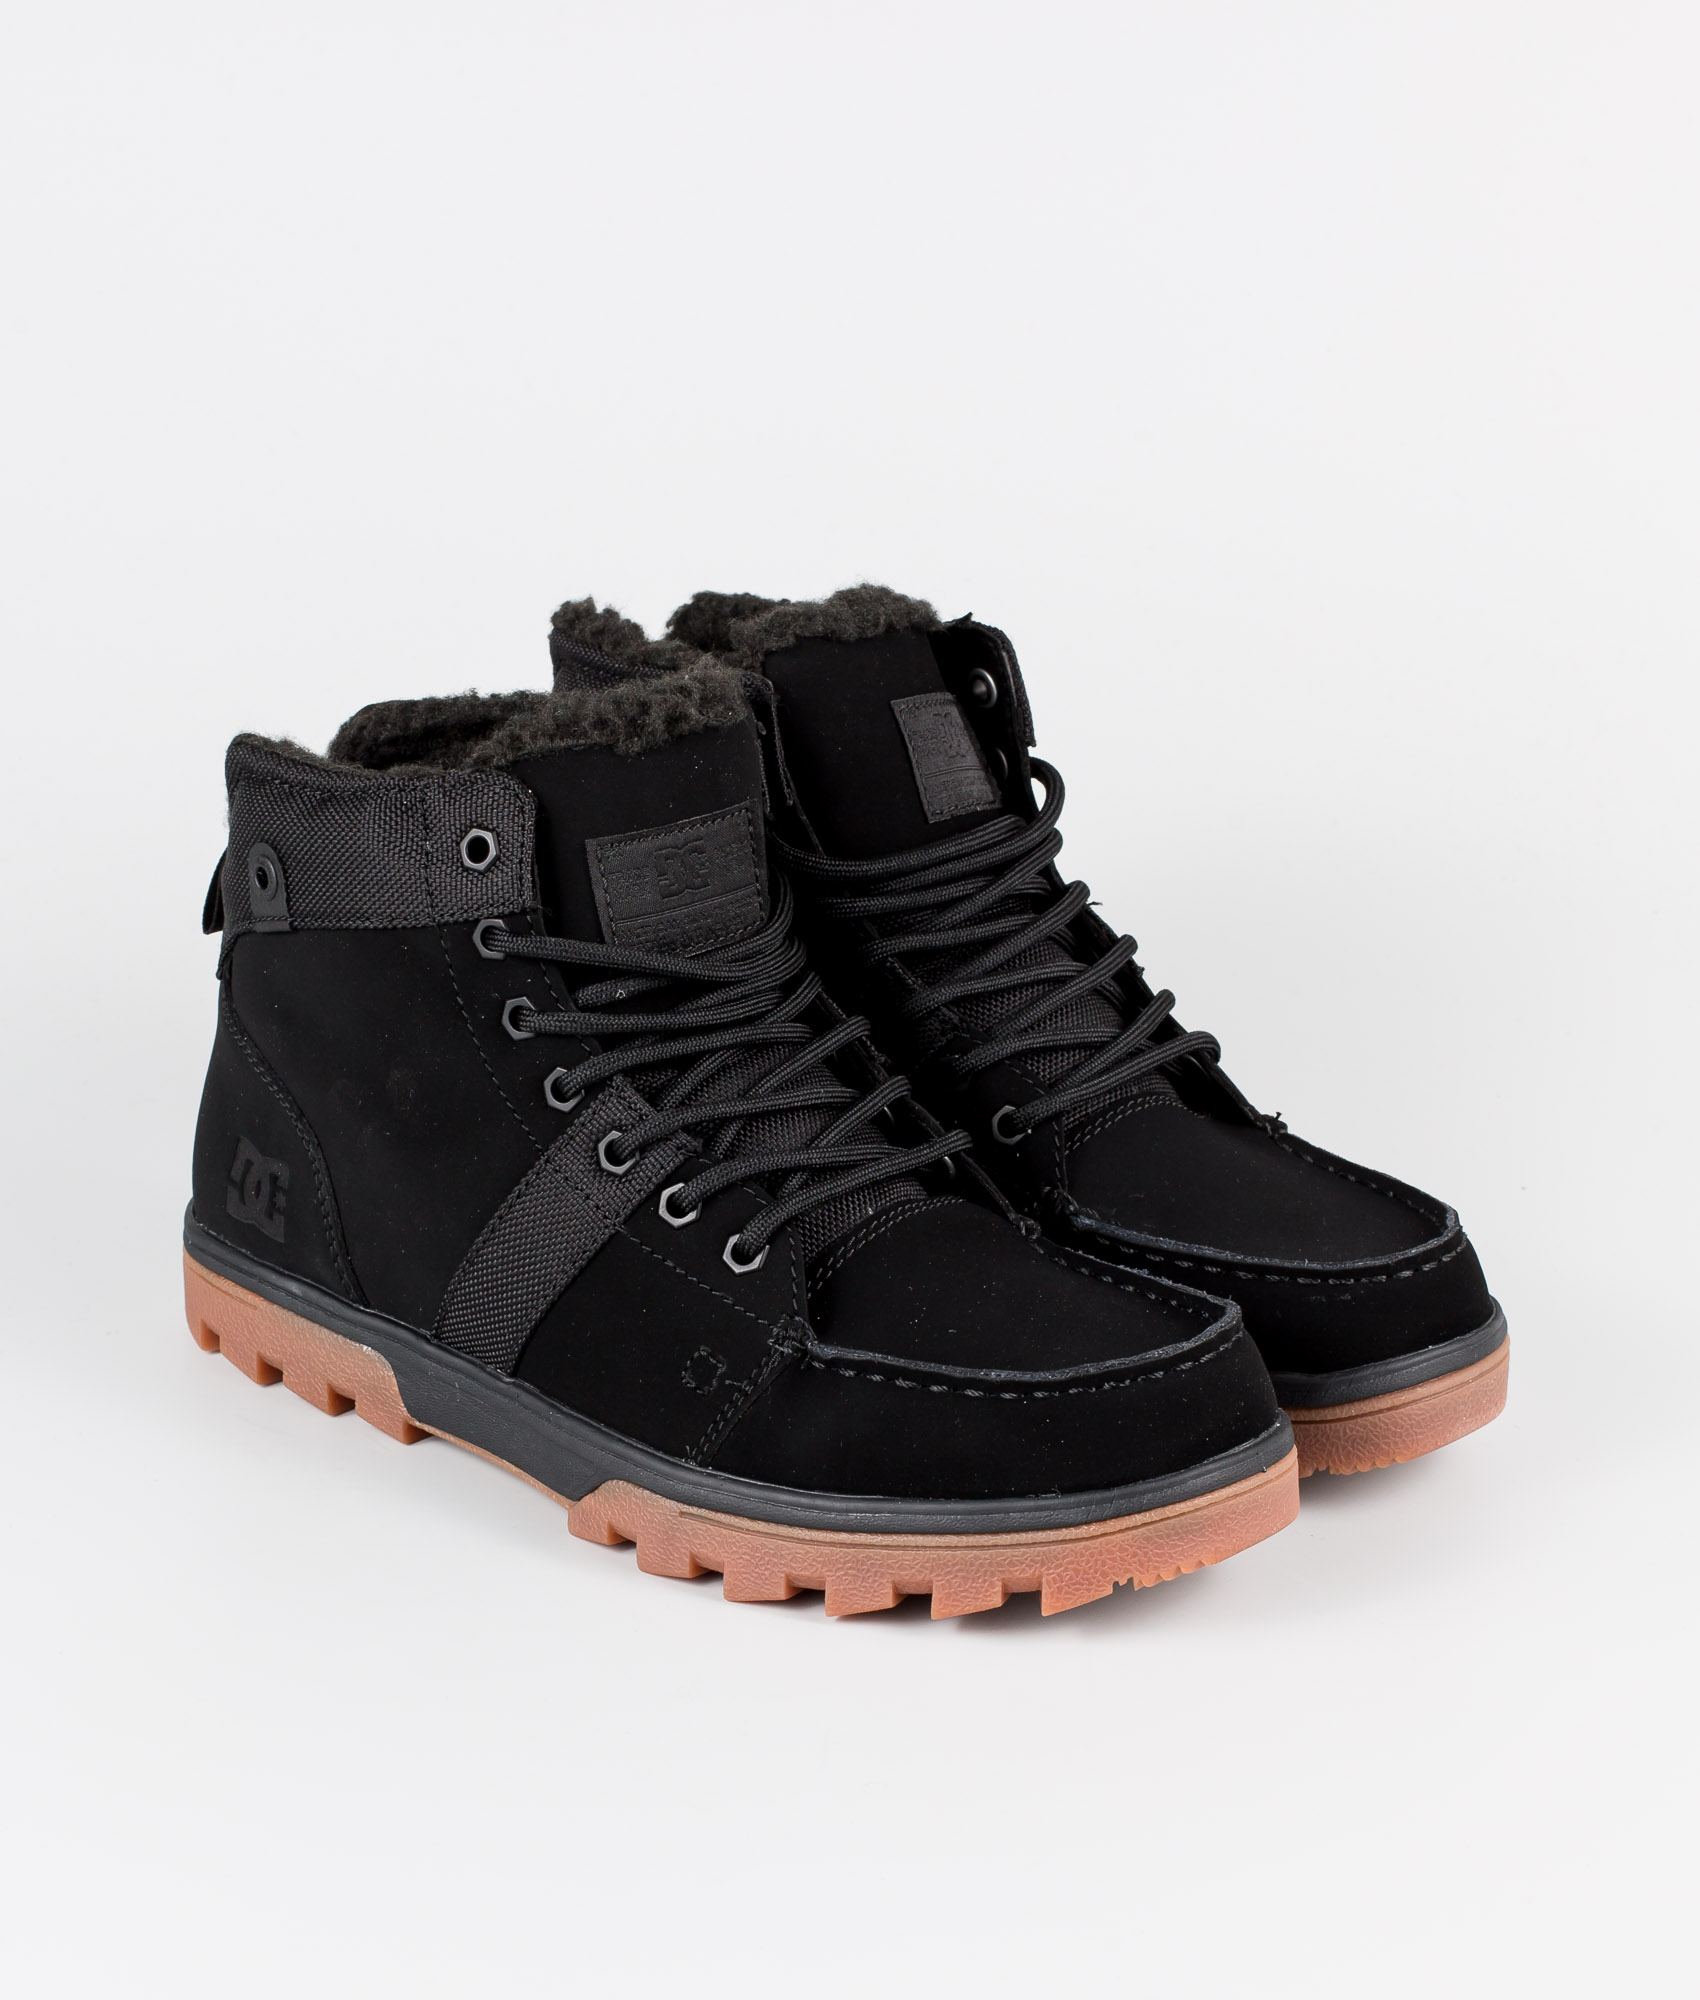 woodland shoes black leather